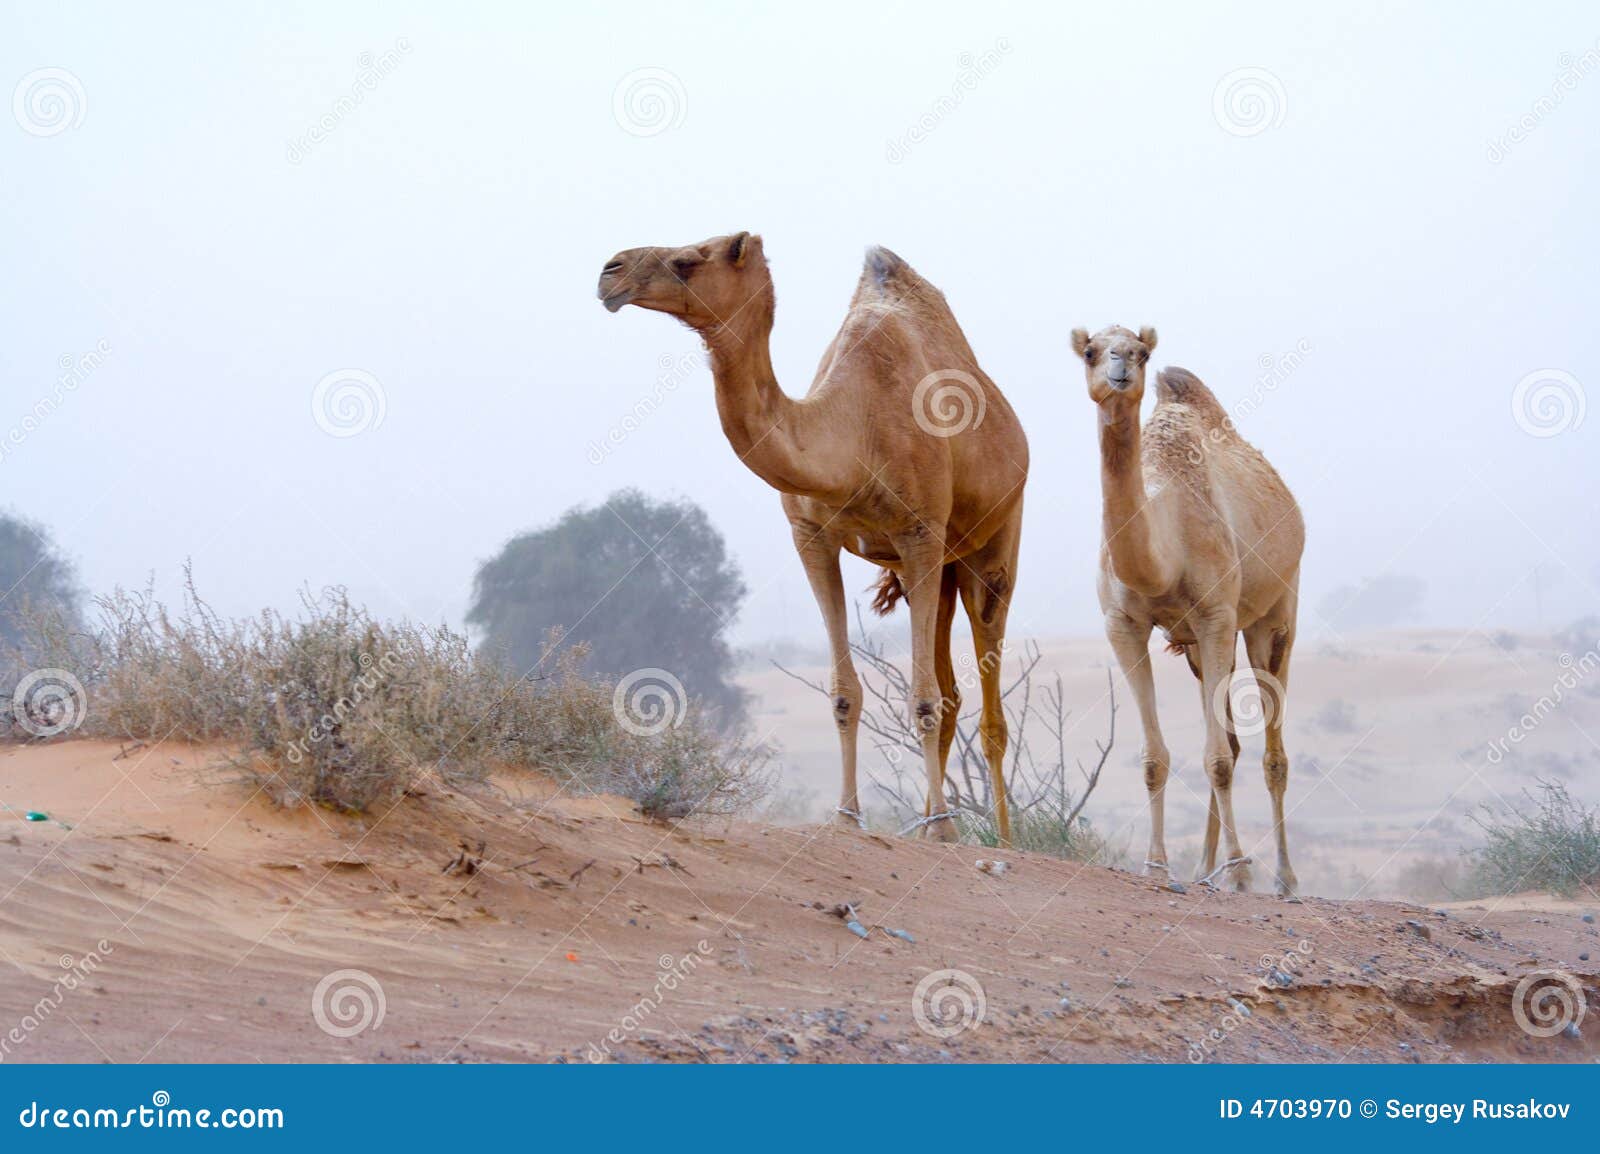 desert nomads